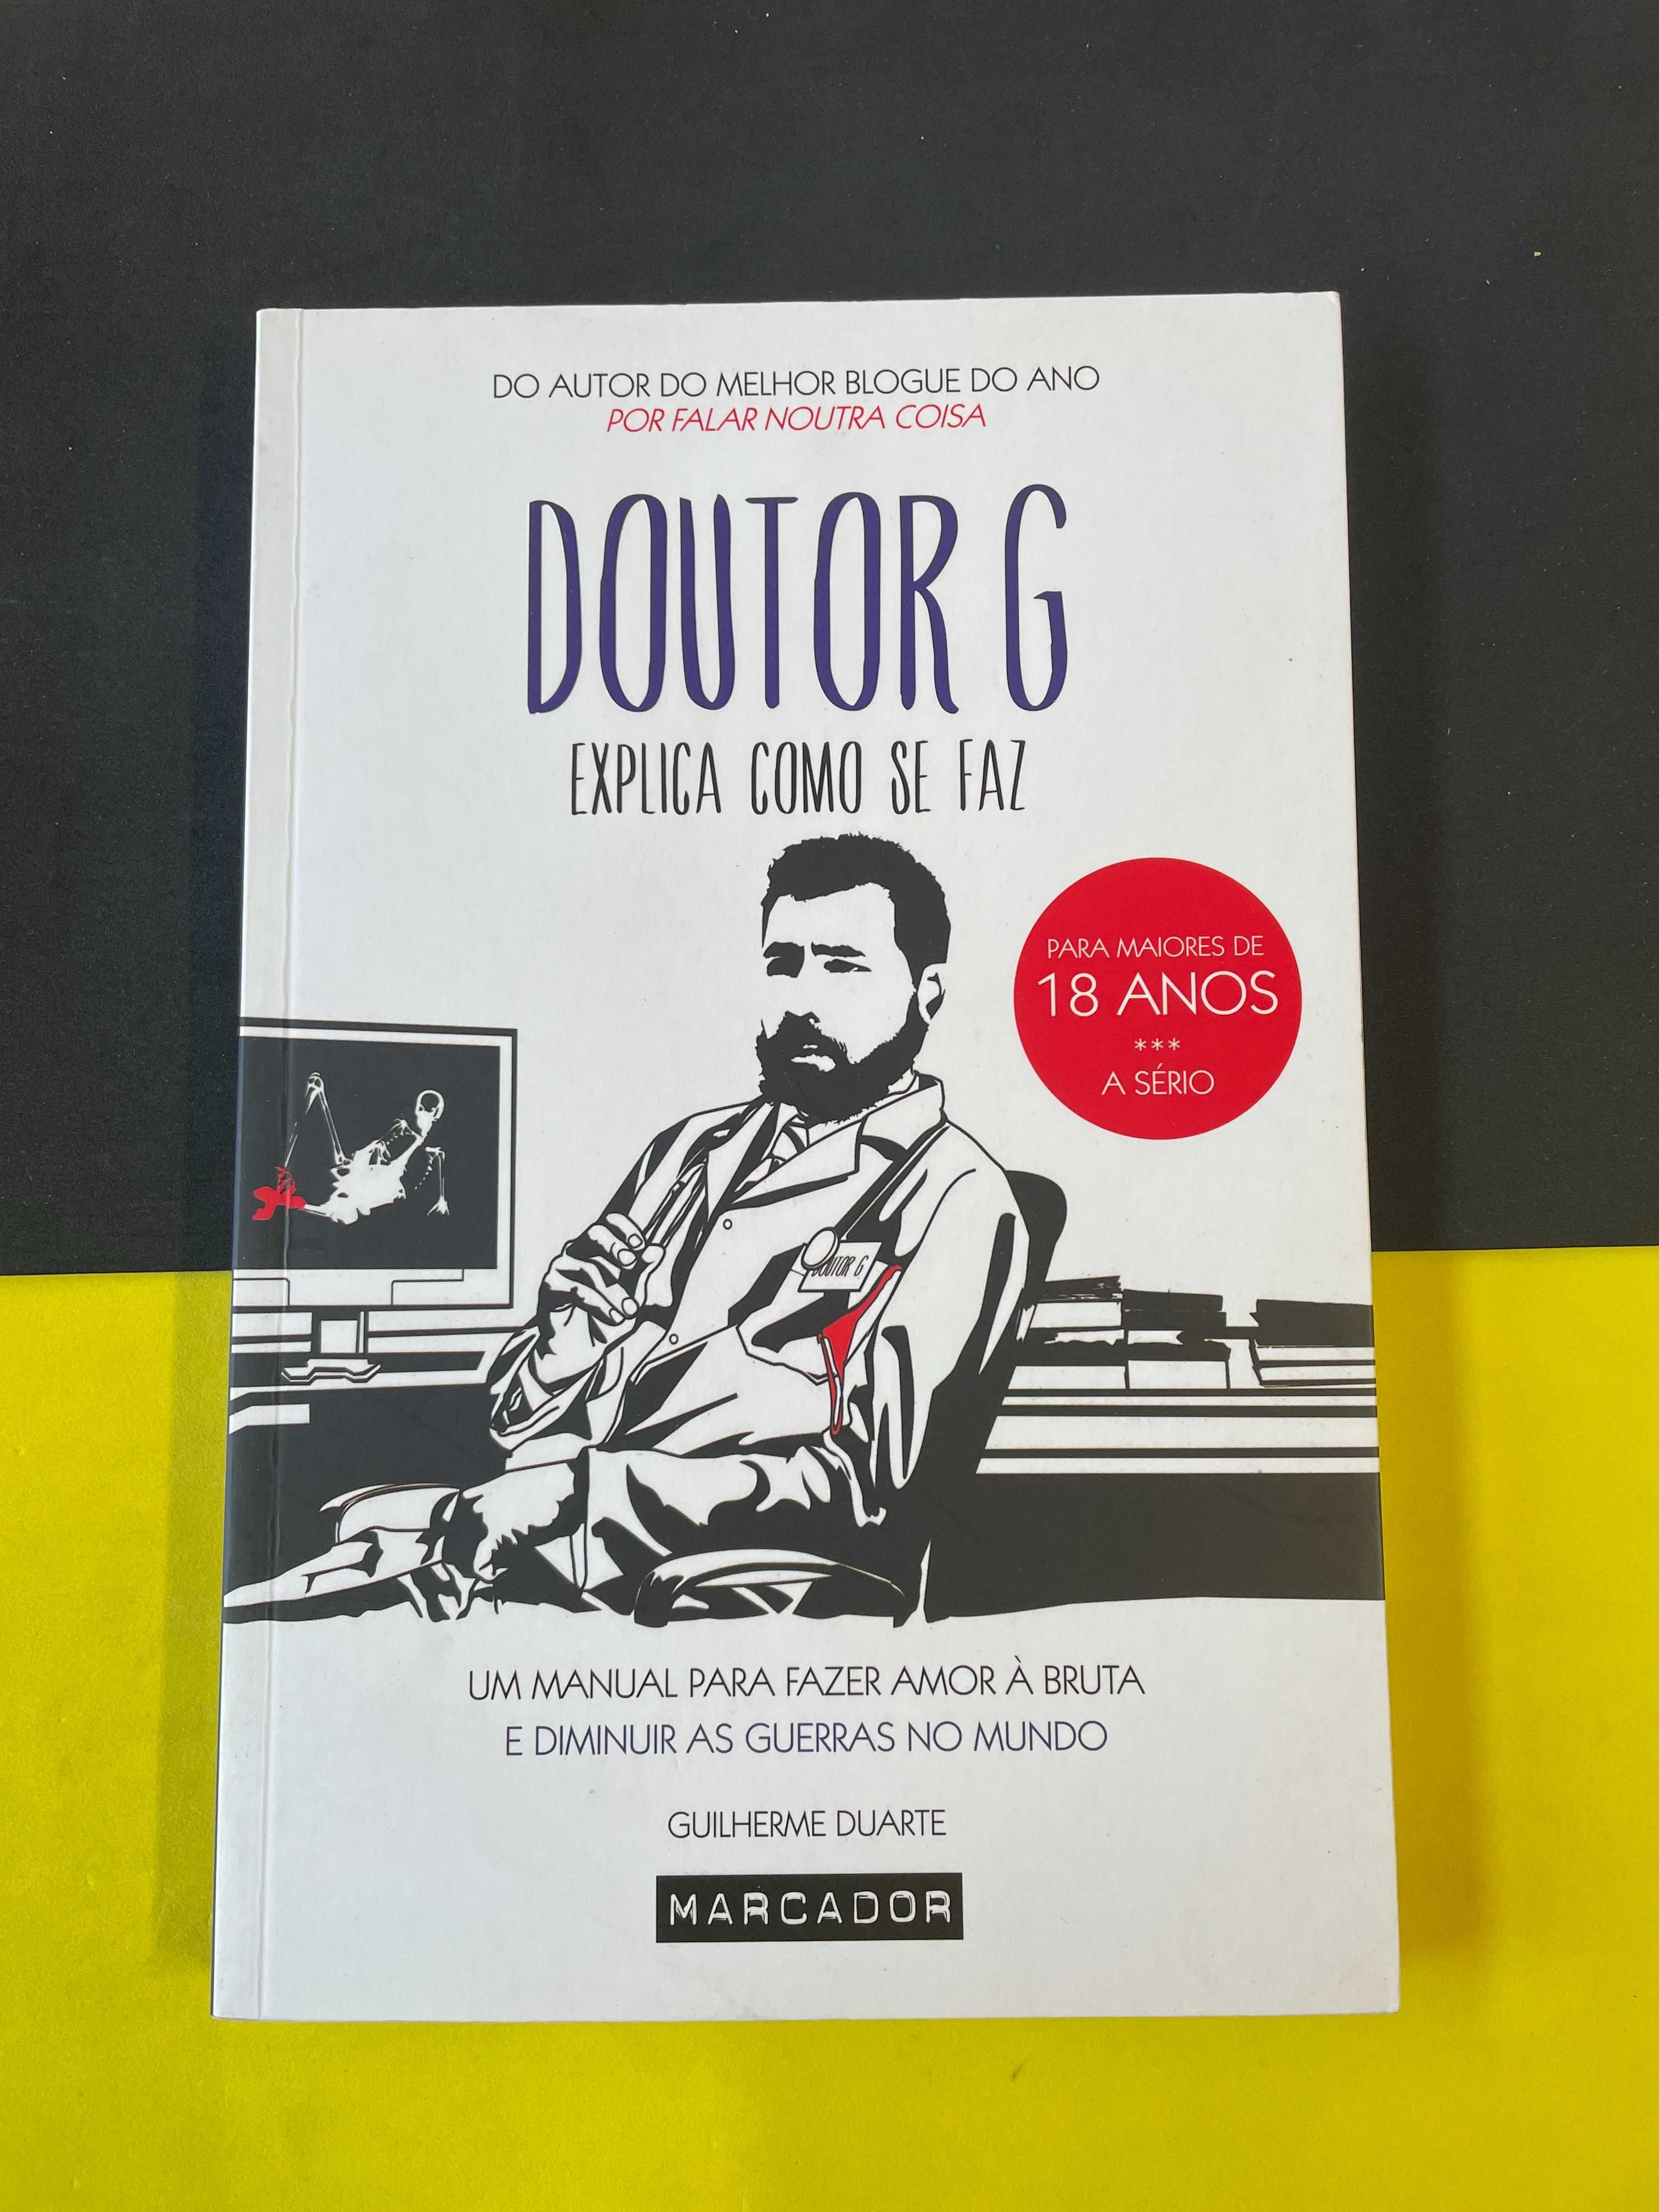 Guilherme Duarte - Doutor G explica como se faz